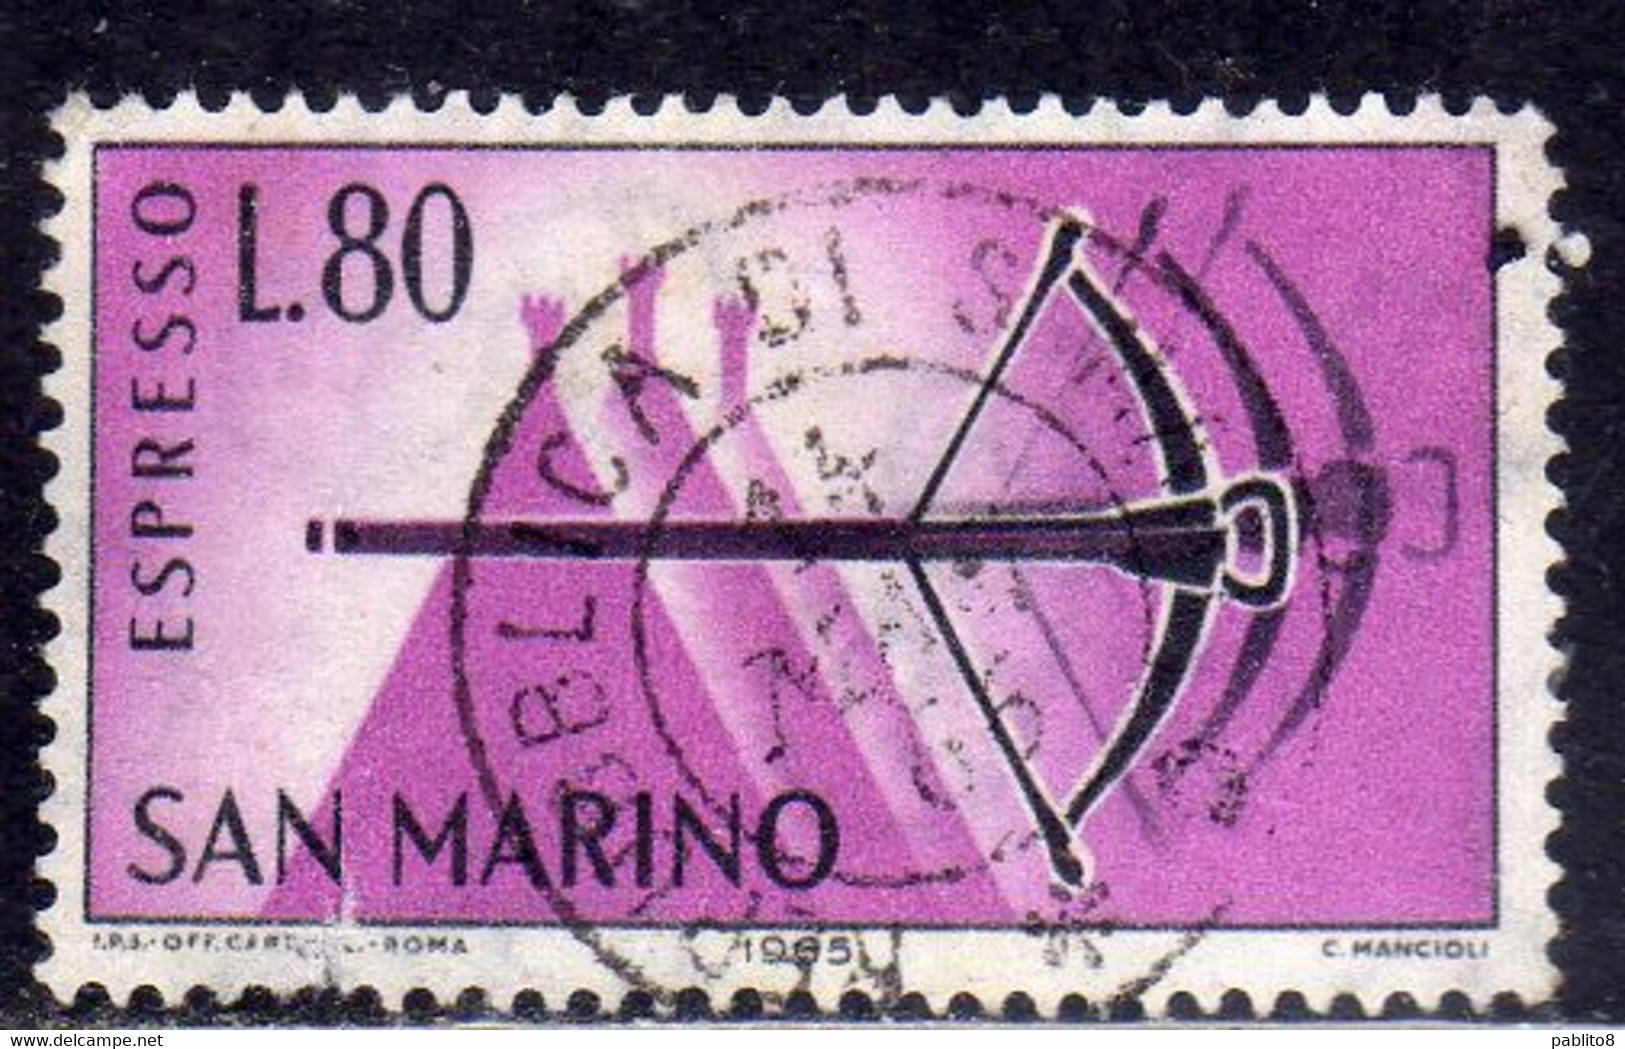 REPUBBLICA DI SAN MARINO 1966 ESPRESSI SPECIAL DELIVERY ESPRESSO BALESTRA LIRE 80 USATO USED OBLITERE' - Express Letter Stamps